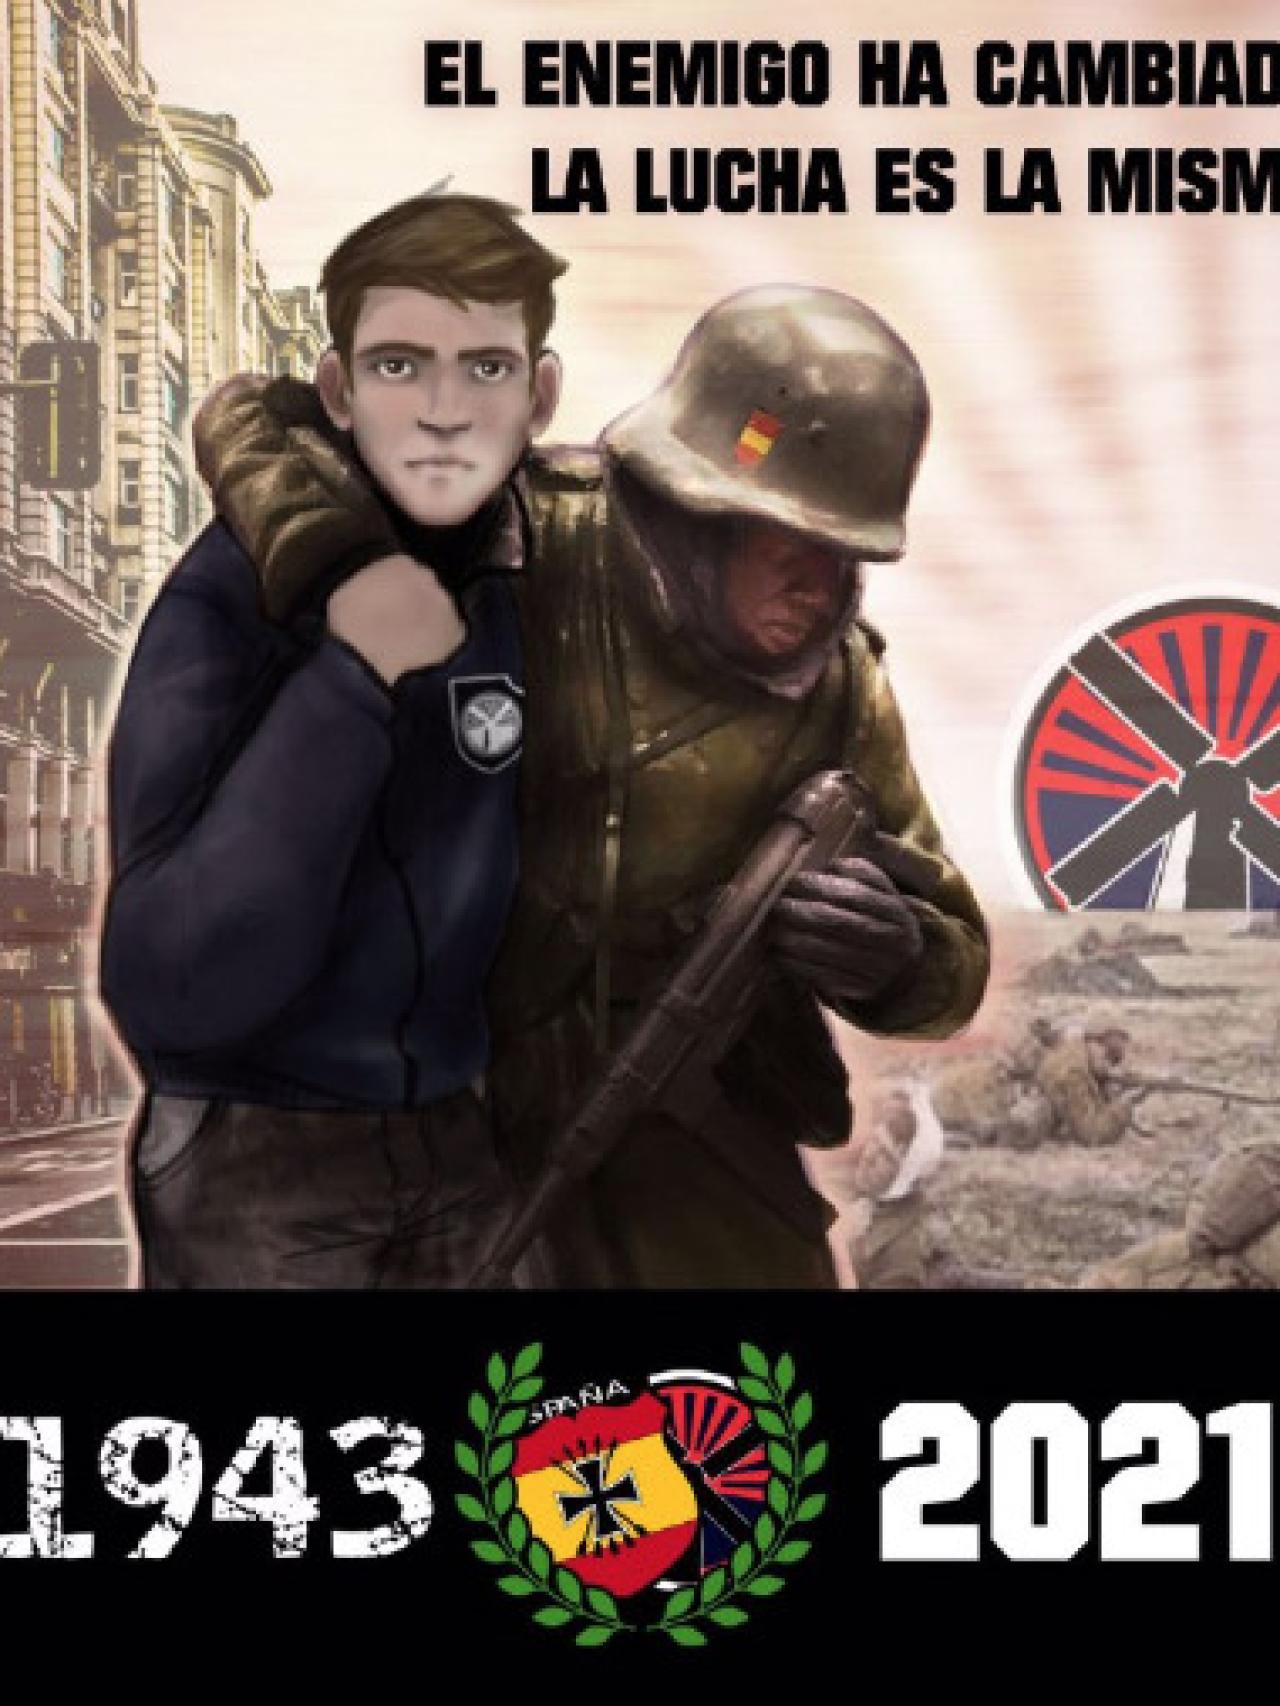 Cartel propagandístico de los neonazis.